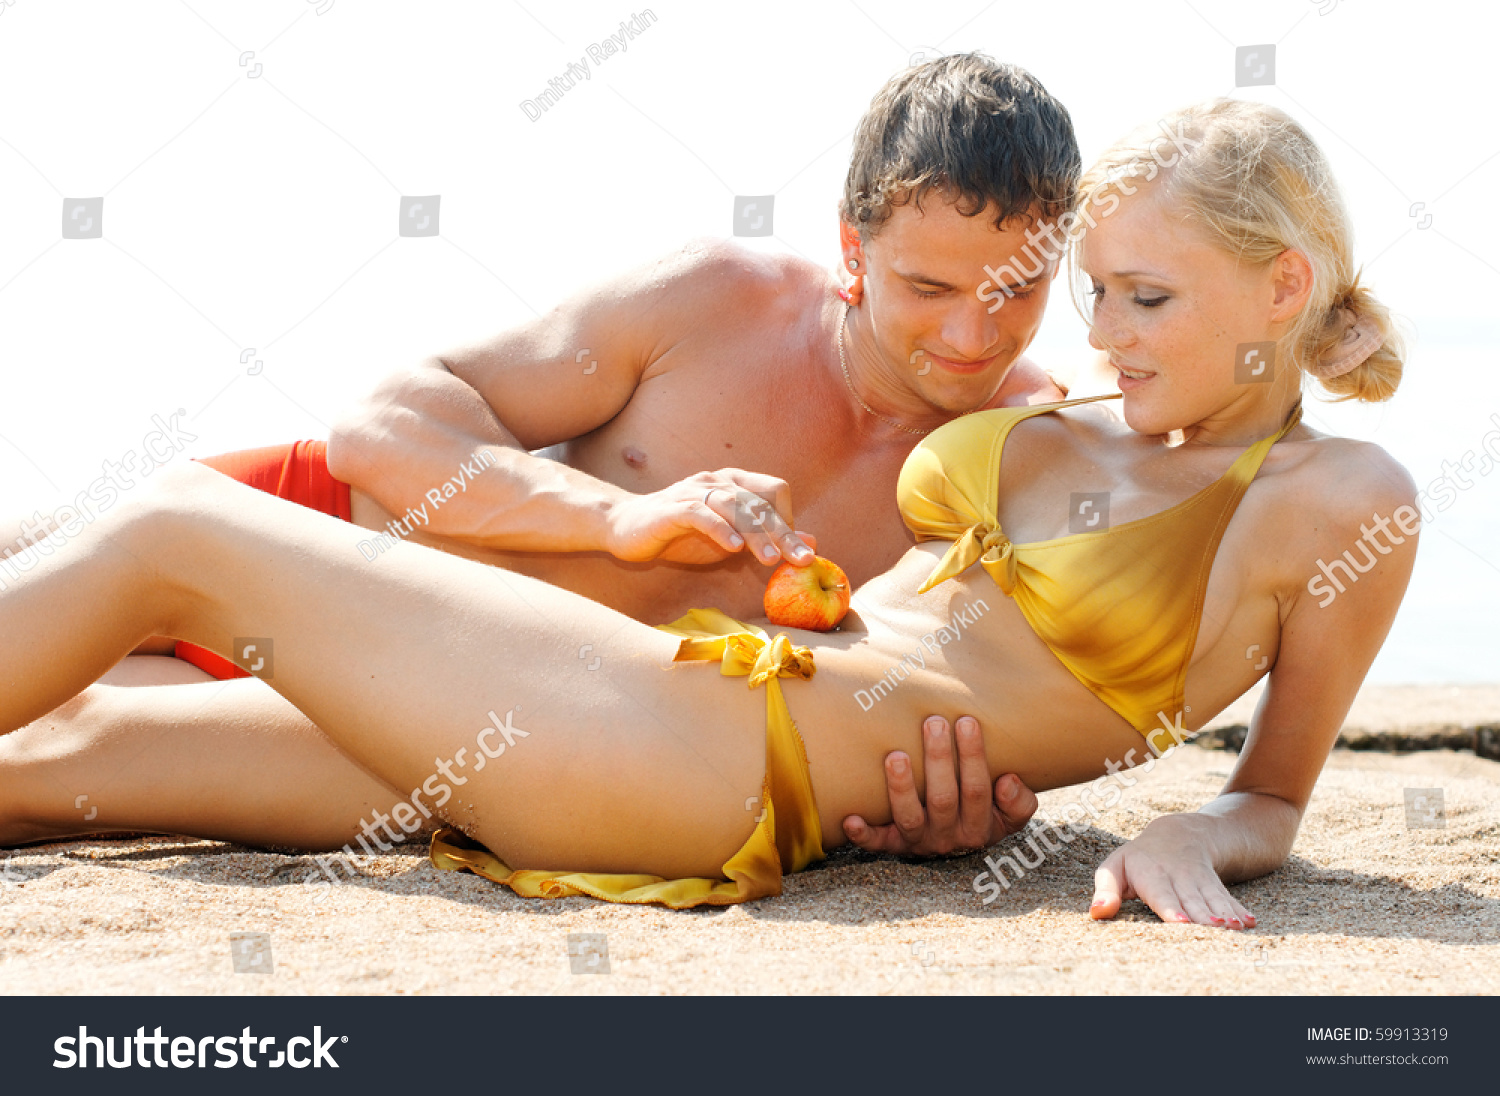 Лесбиянка в купальнике засовывает руку в киску подруги на пляже